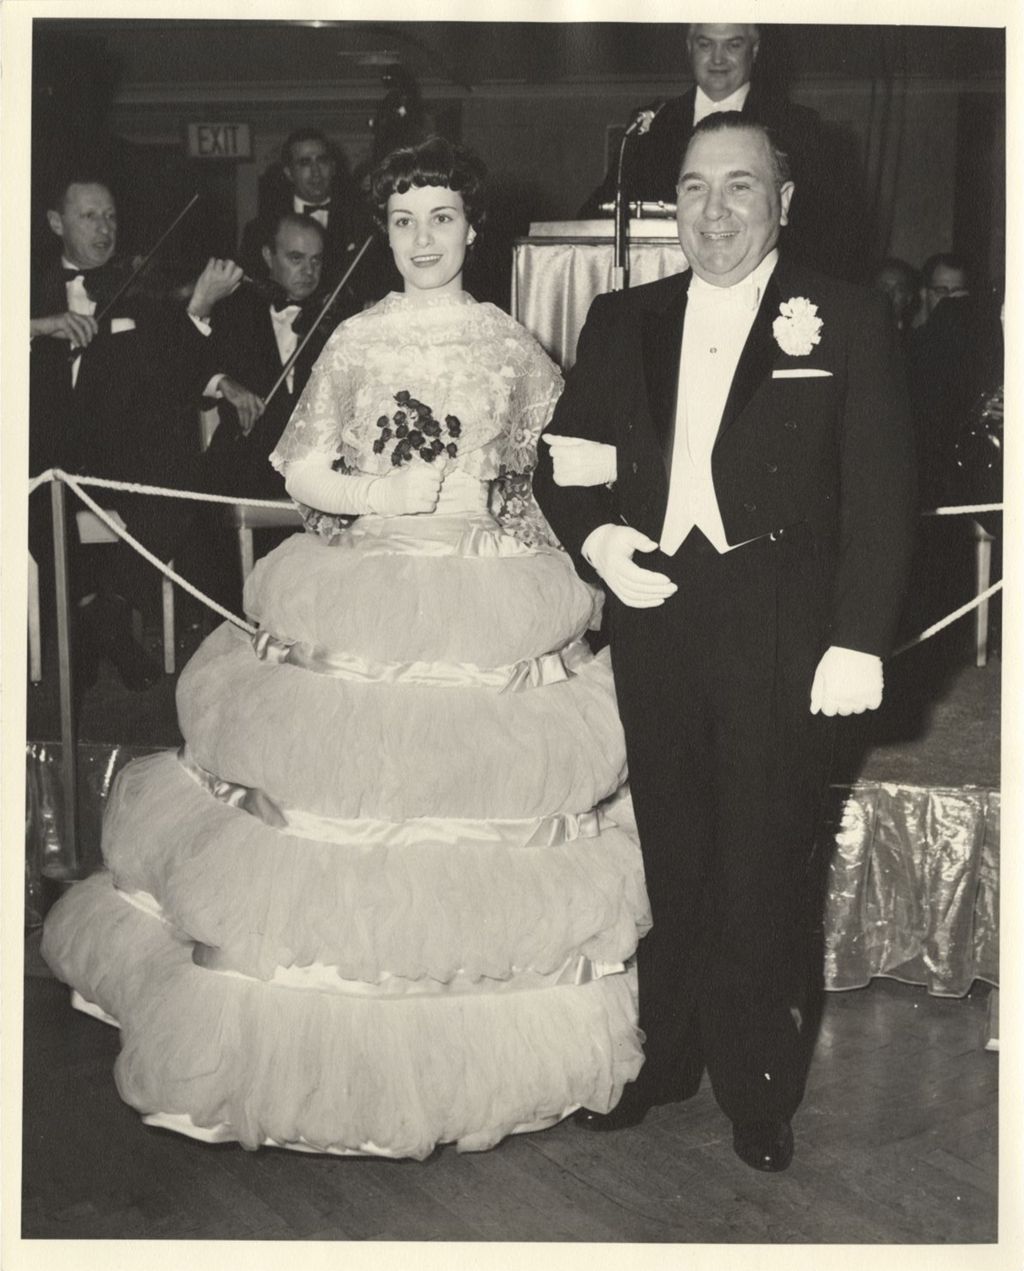 Miniature of Mary Carol and Richard J. Daley at Debut Presentation Ball